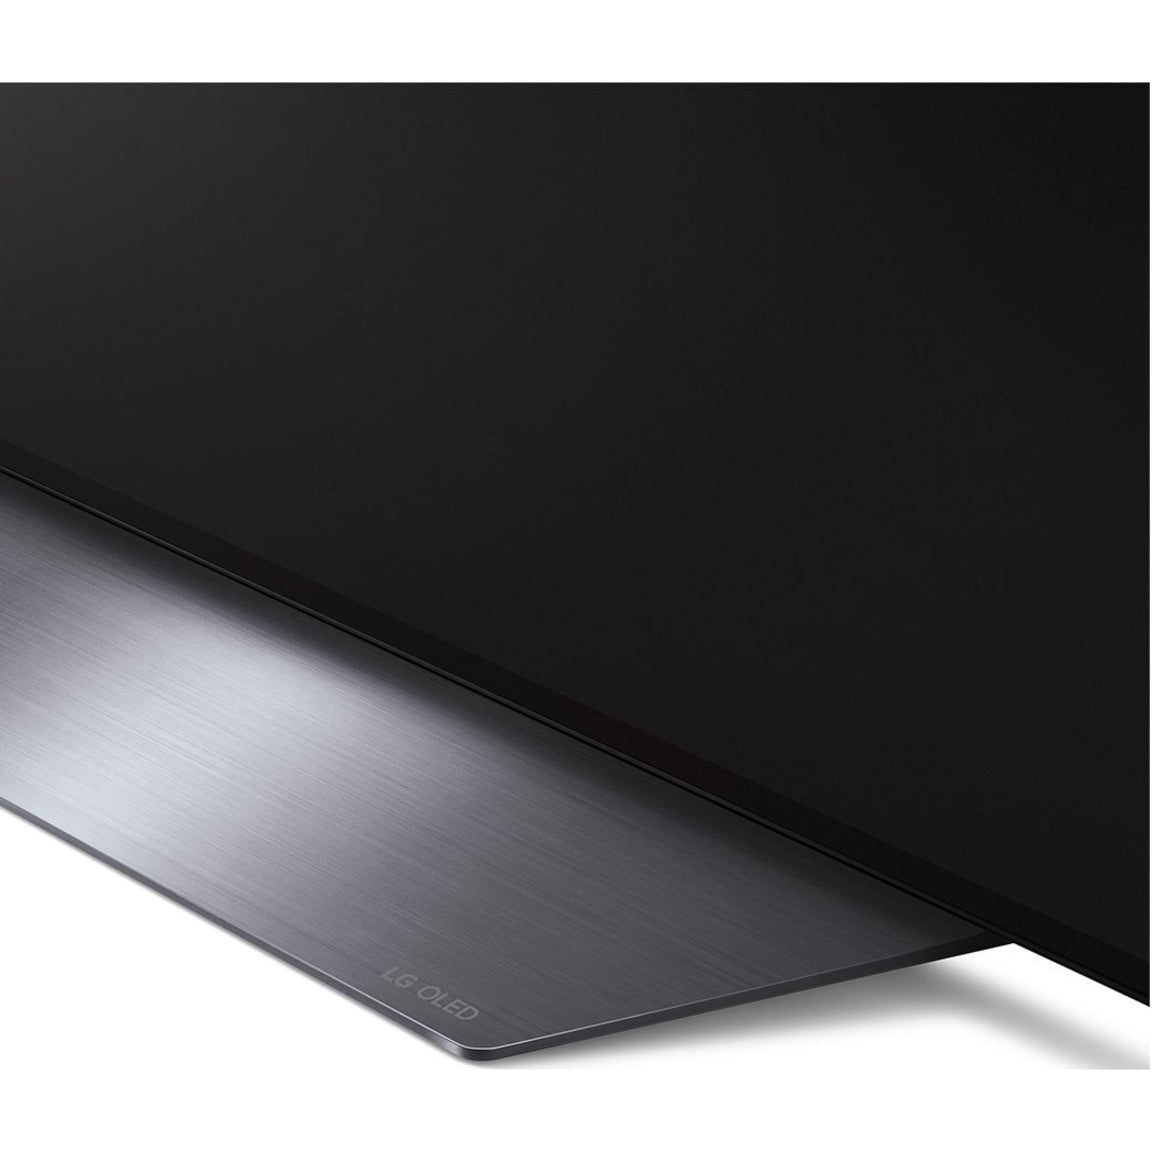 LG B2 PUA OLED55B2PUA 54.6" Smart OLED TV - 4K UHDTV - Black